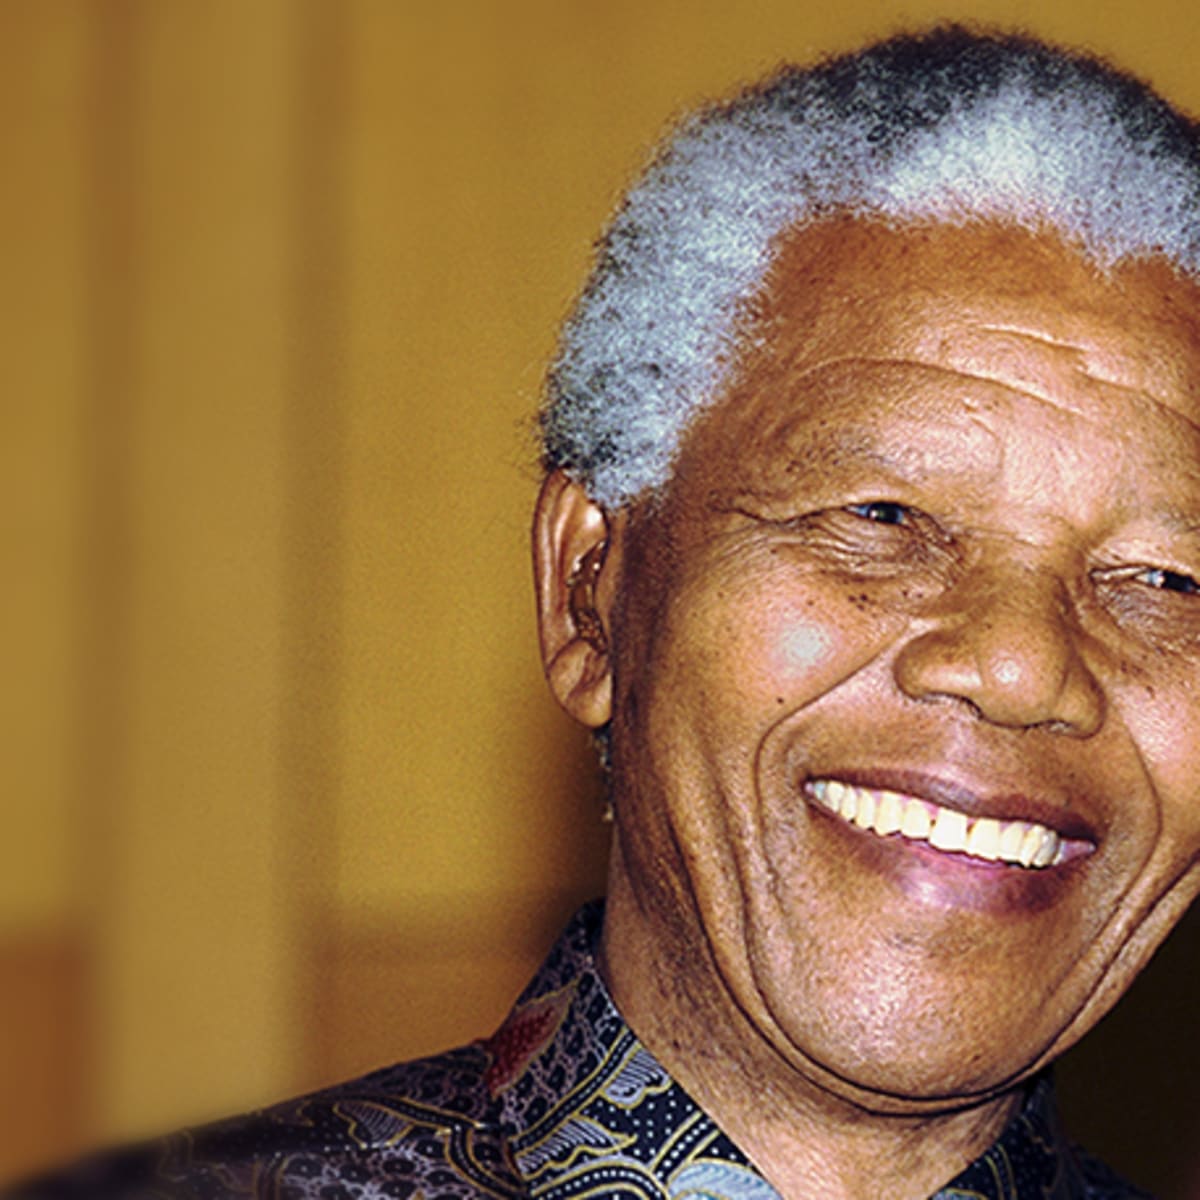 Pictures: Meet Nelson Mandela’s look-alike